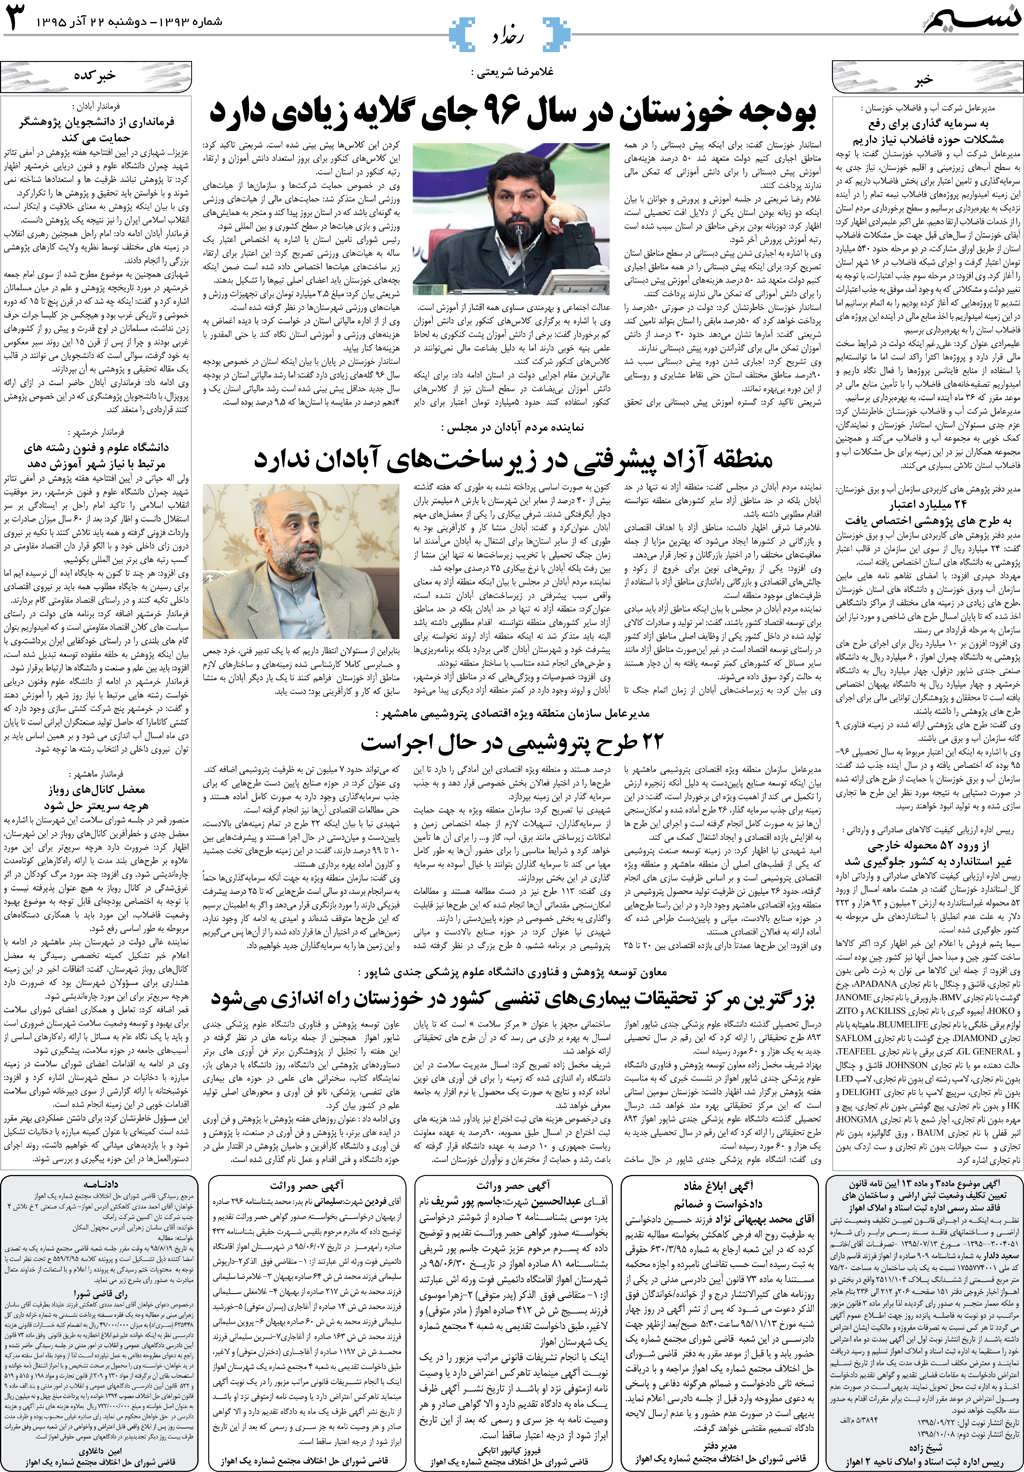 صفحه رخداد روزنامه نسیم شماره 1393